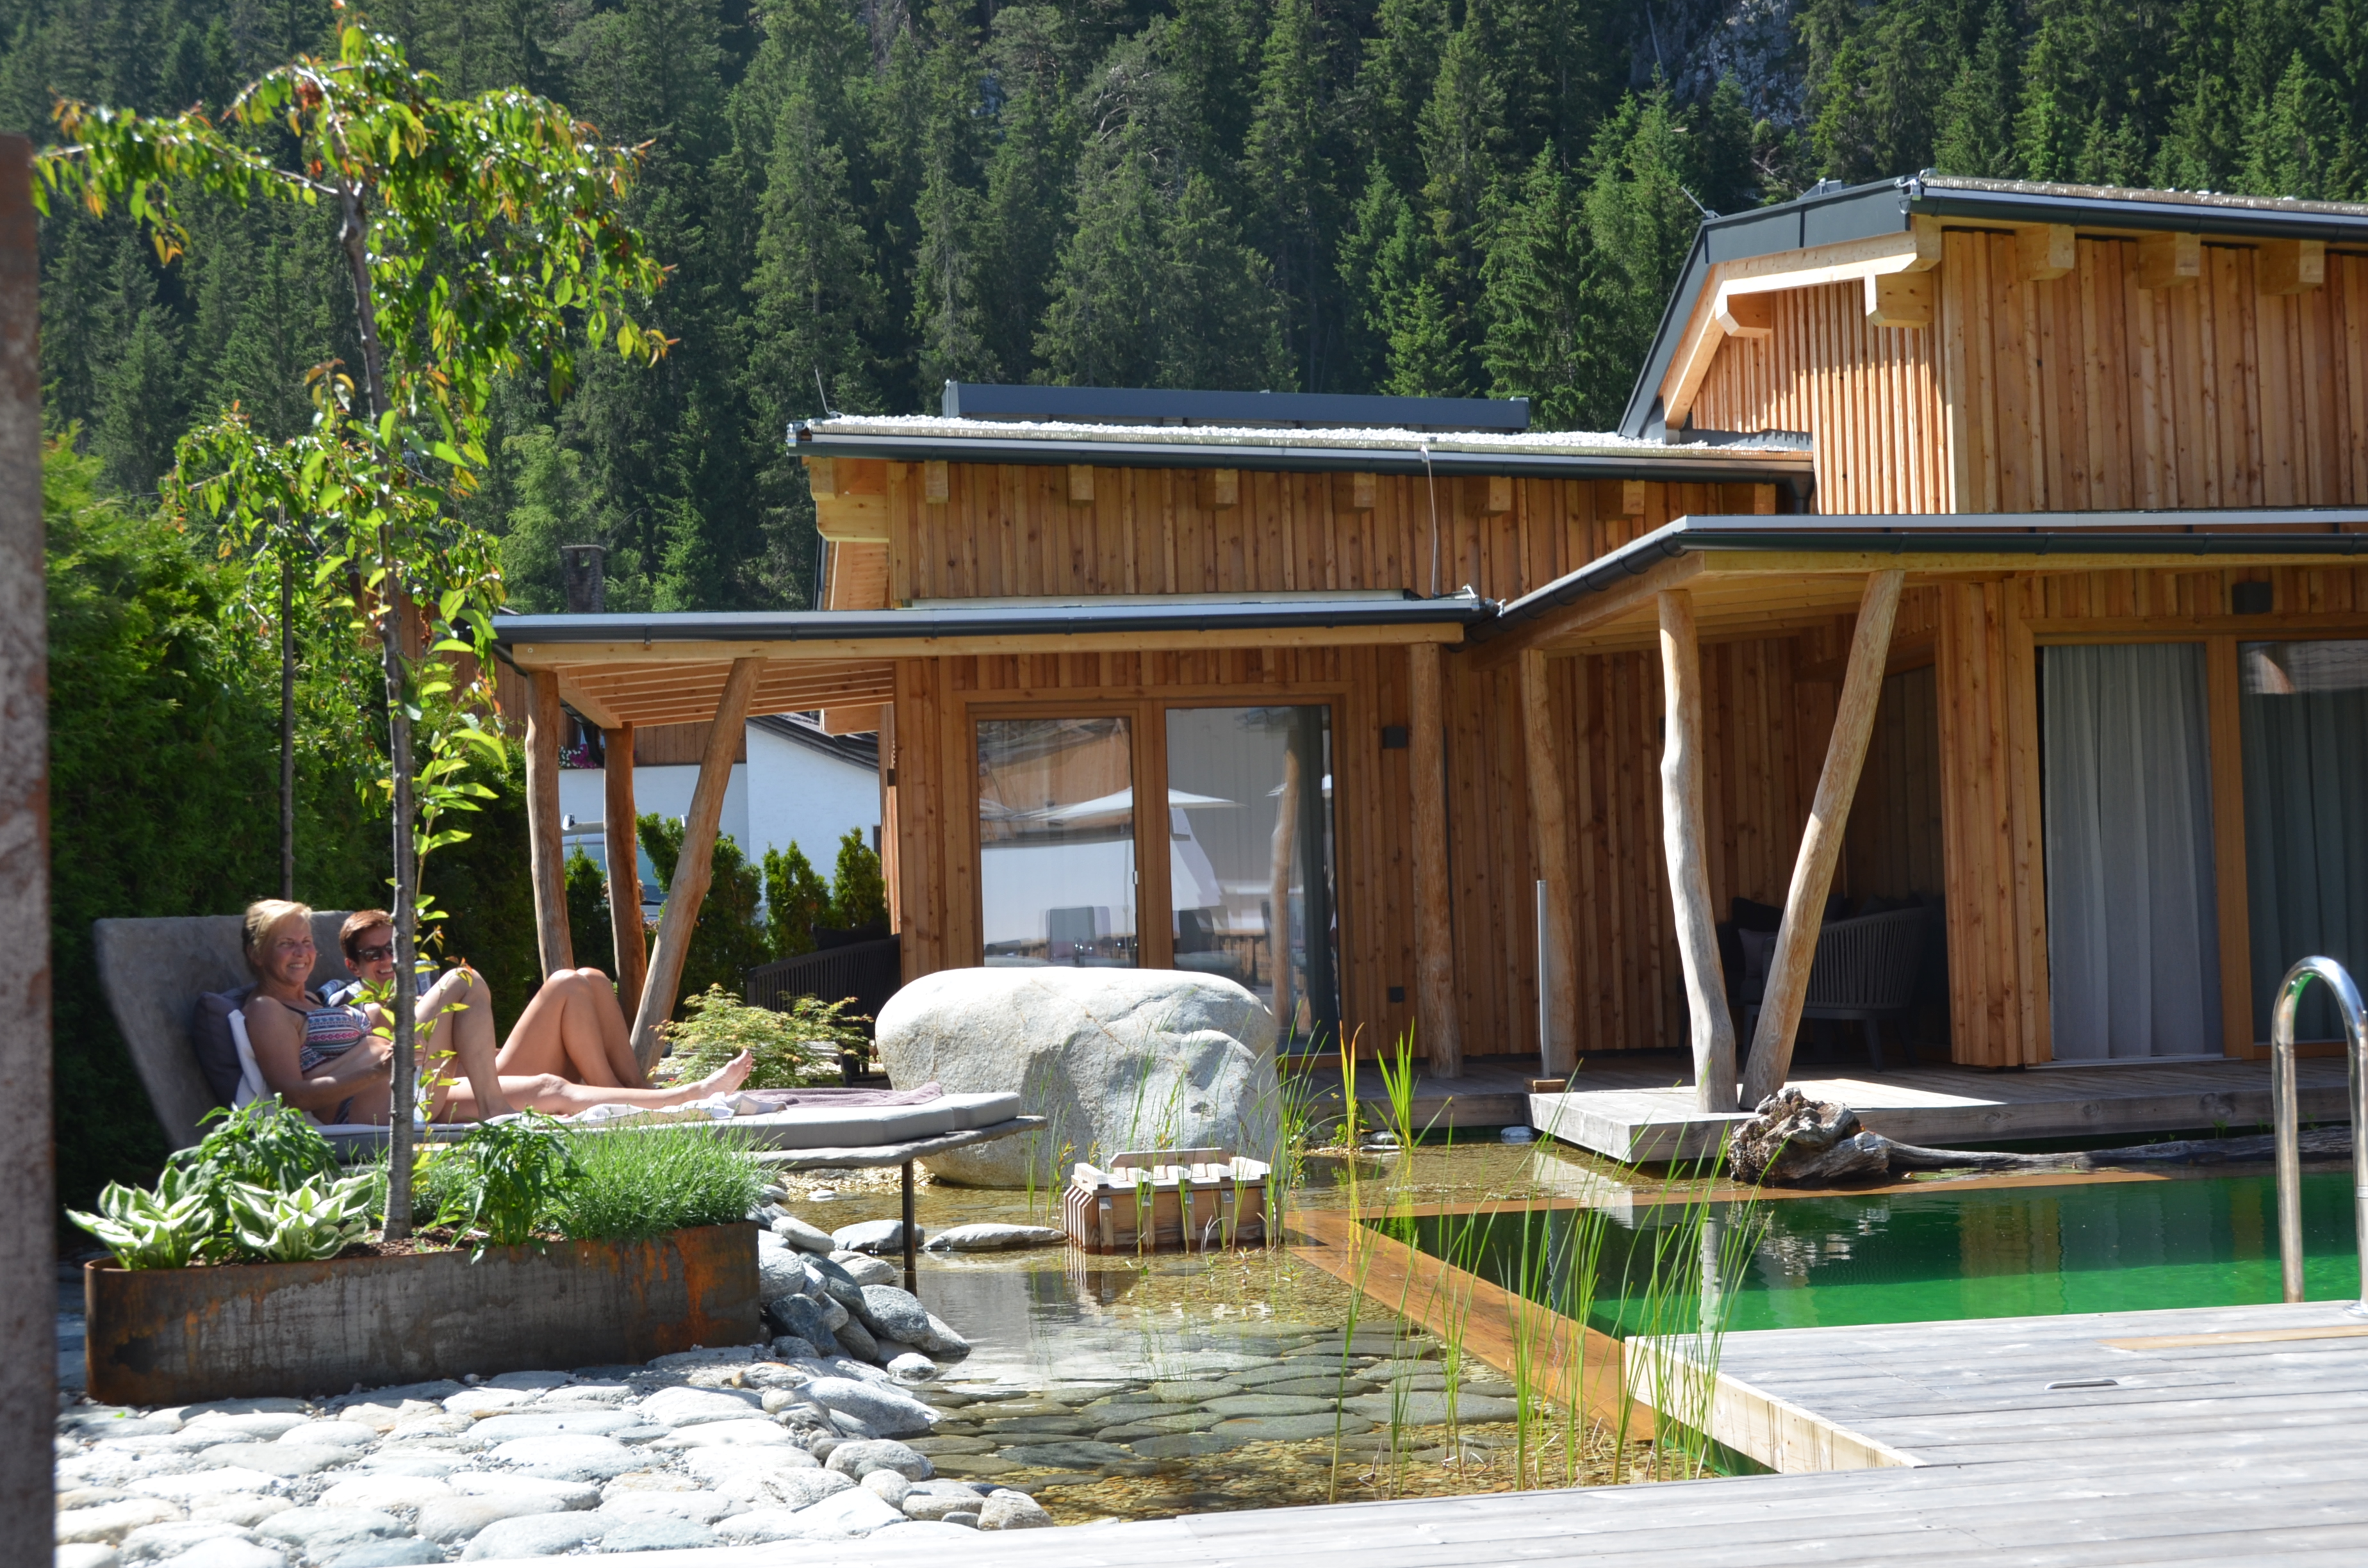 Teich im Sommer, Naturhotel Aufatmen, Leutasch/Tirol